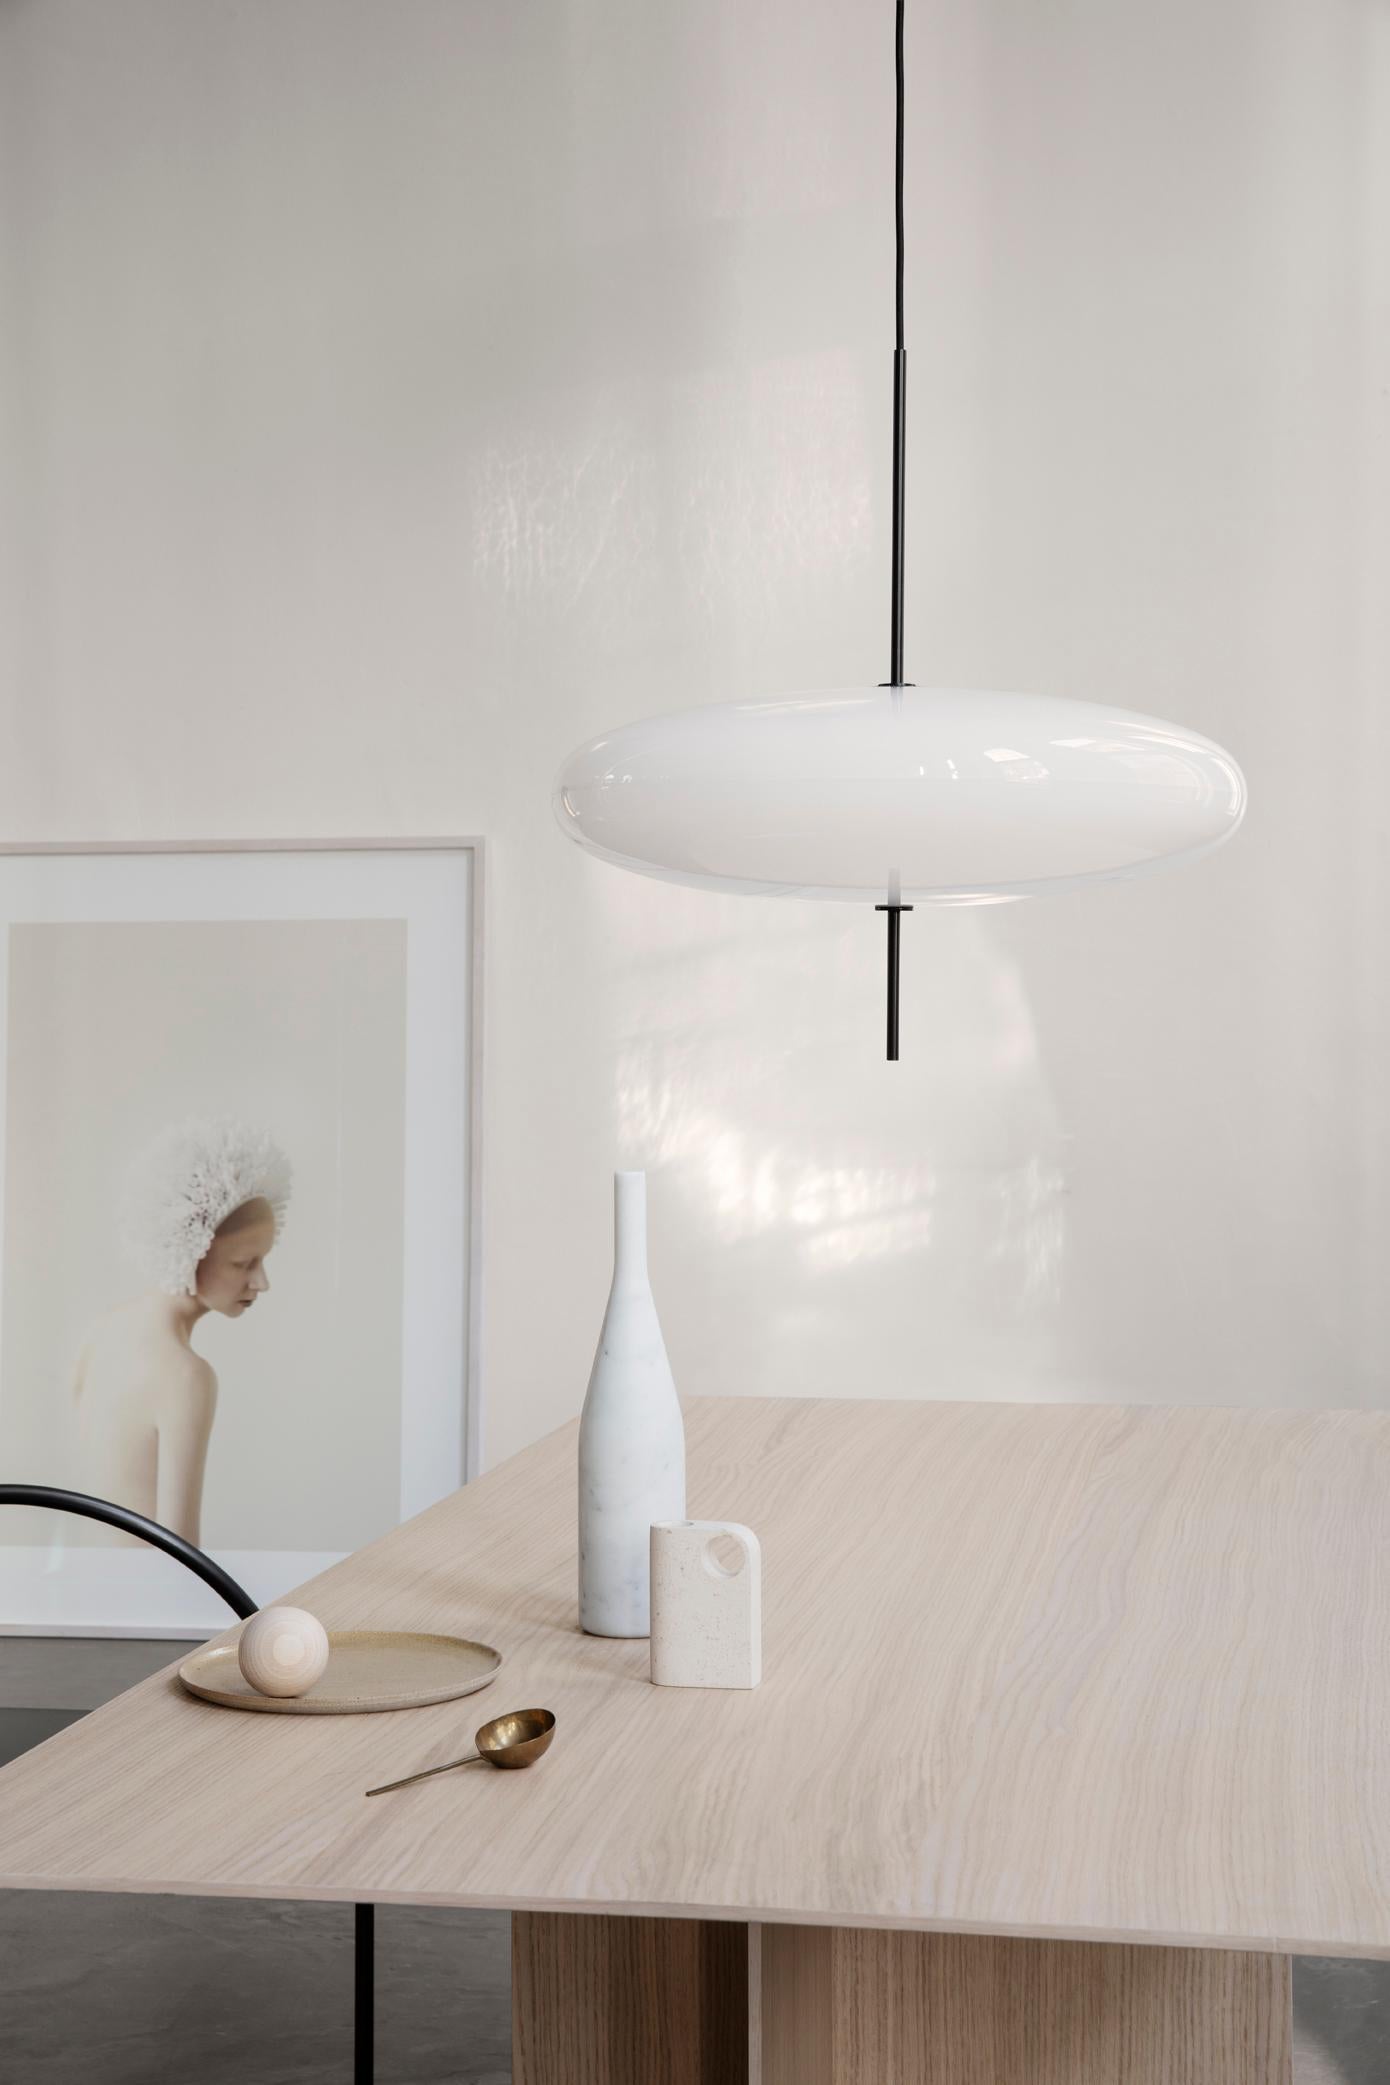 Gino Sarfatti Lamp Model 2065 White Diffuser, Black Hardware In New Condition For Sale In Barcelona, Barcelona